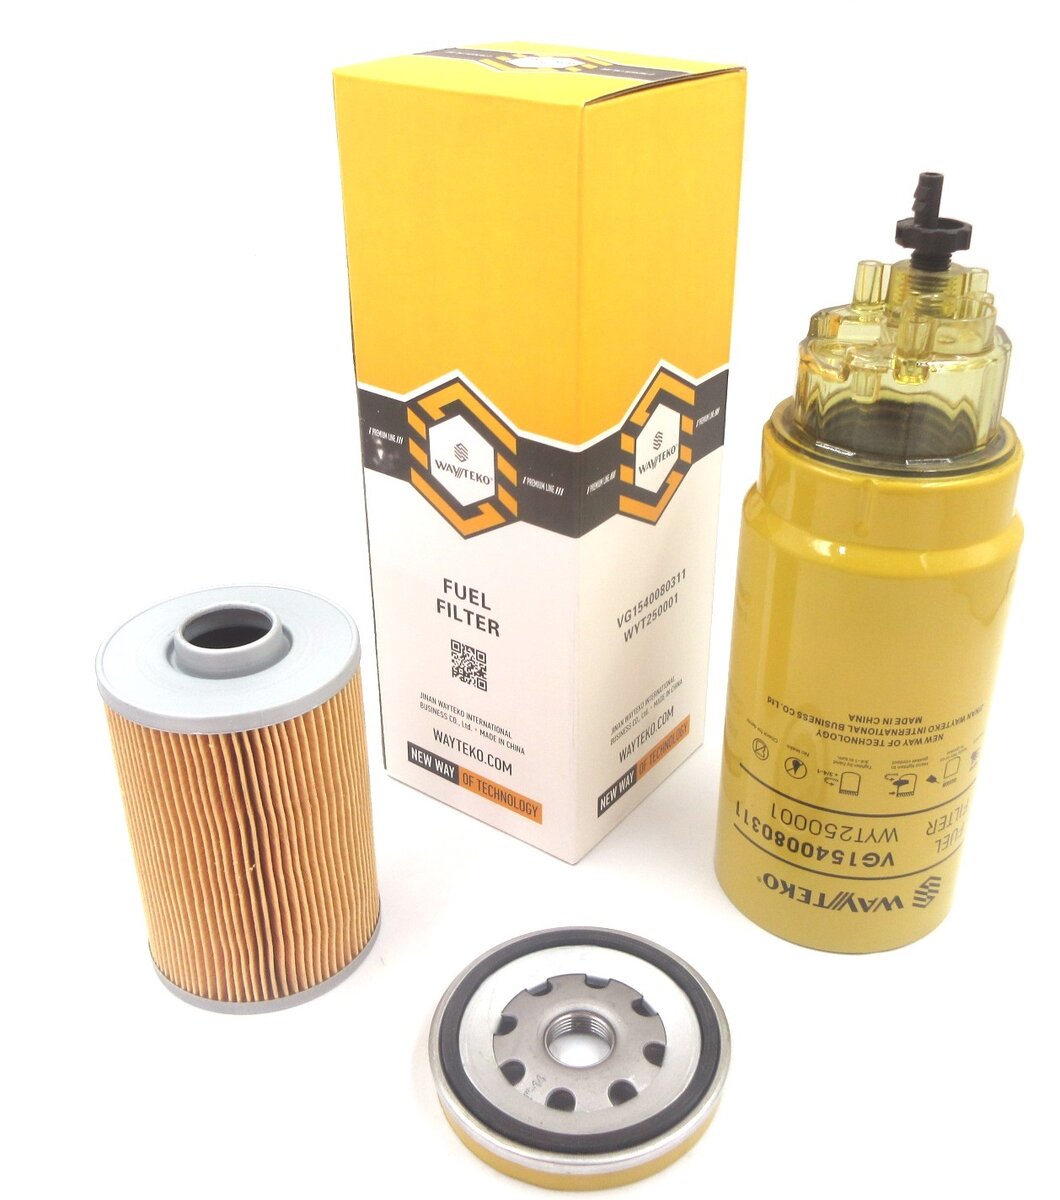 Фильтр топливный грубой очистки Евро3 PL420 WAYTEKO PREMIUM LINE VG1540080311. Фото производителя